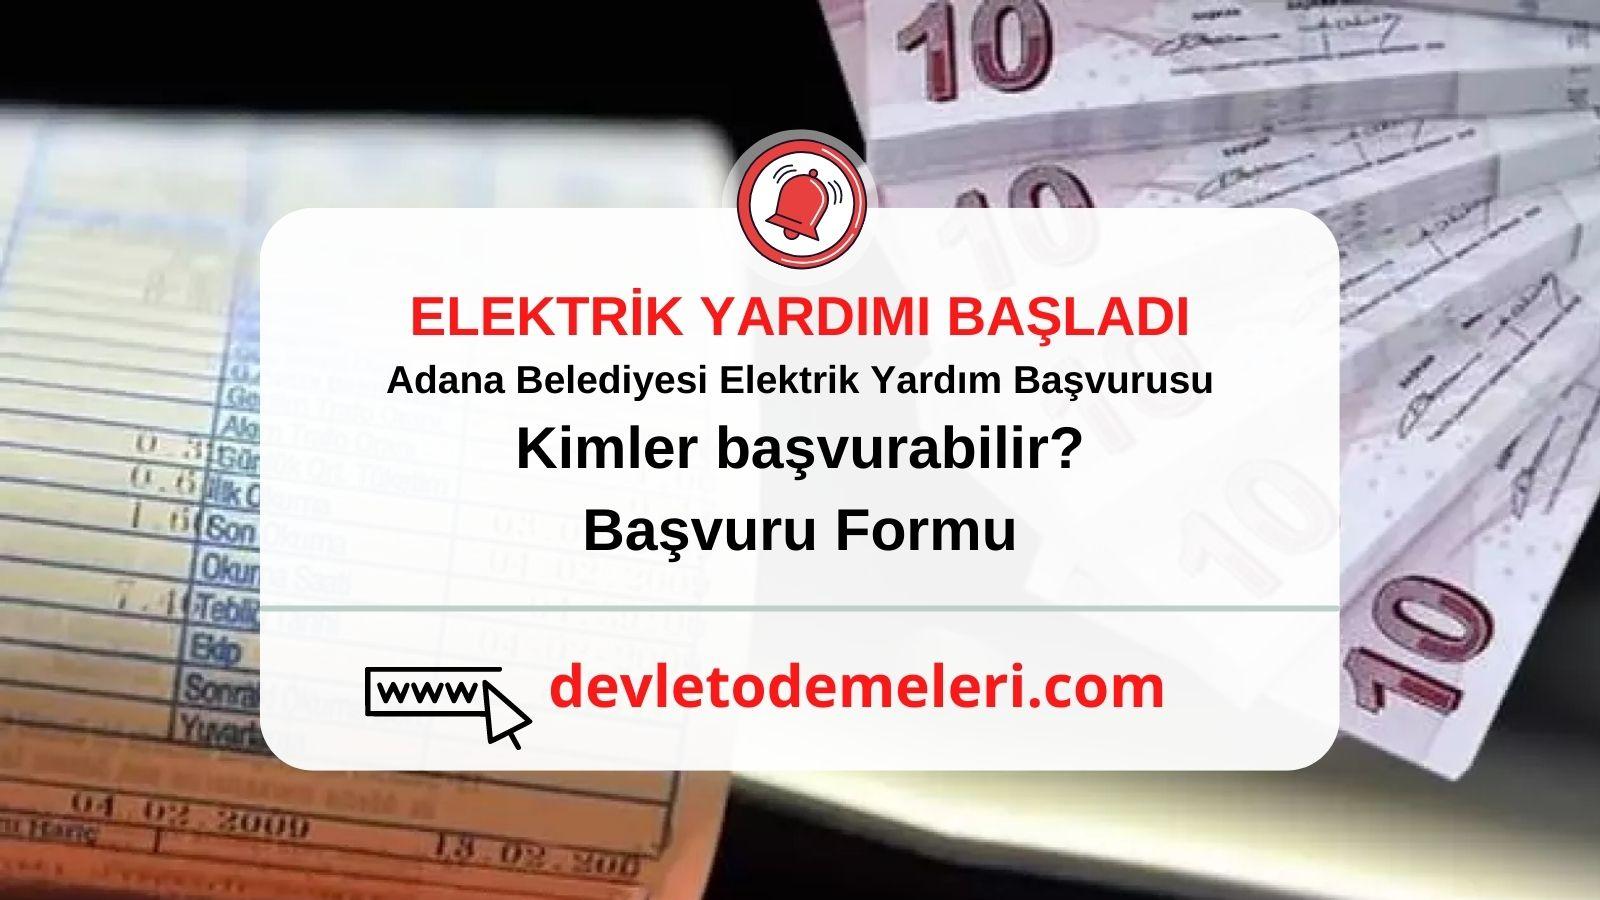 Adana Belediyesi Elektrik Yardım Başvurusu